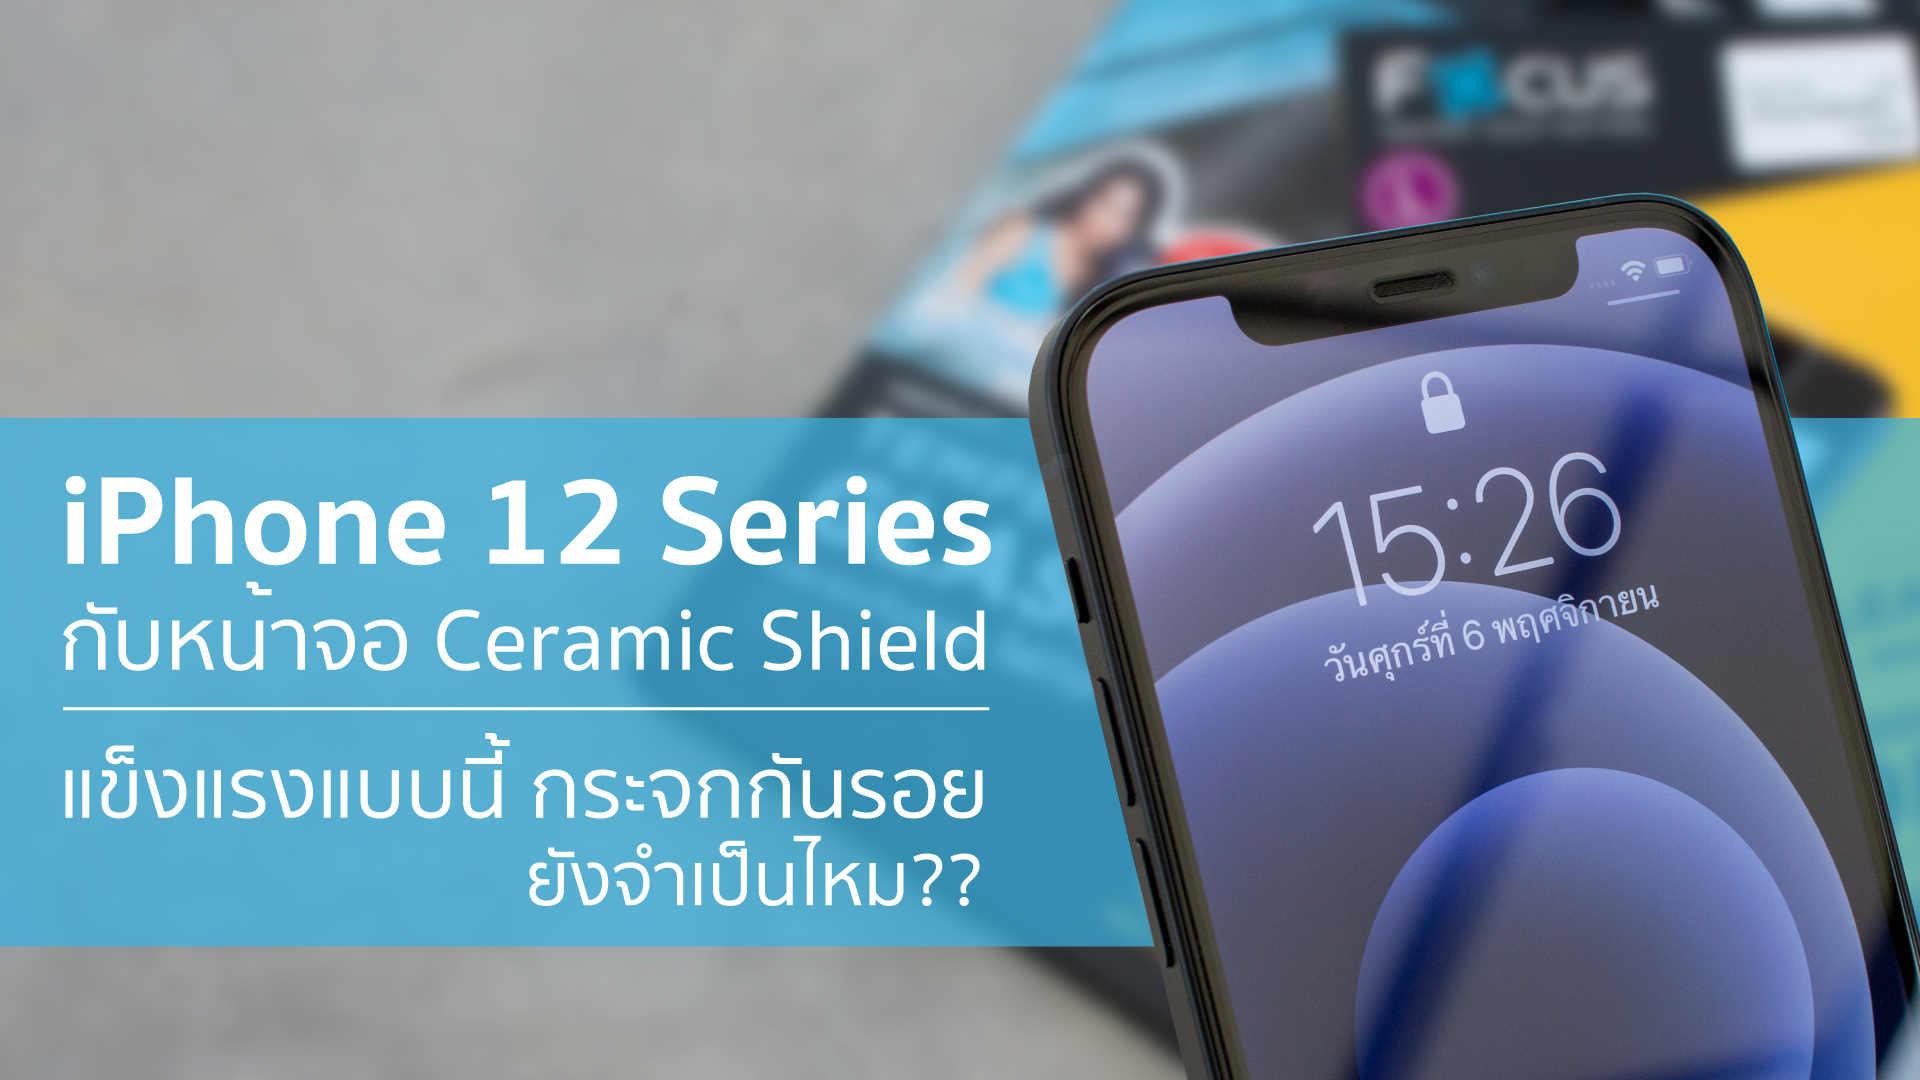 iPhone 12 Series หน้าจอ Ceramic Shield แข็งกว่ากระจก 4 เท่า กระจกกันรอยยังจำเป็นไหม ?